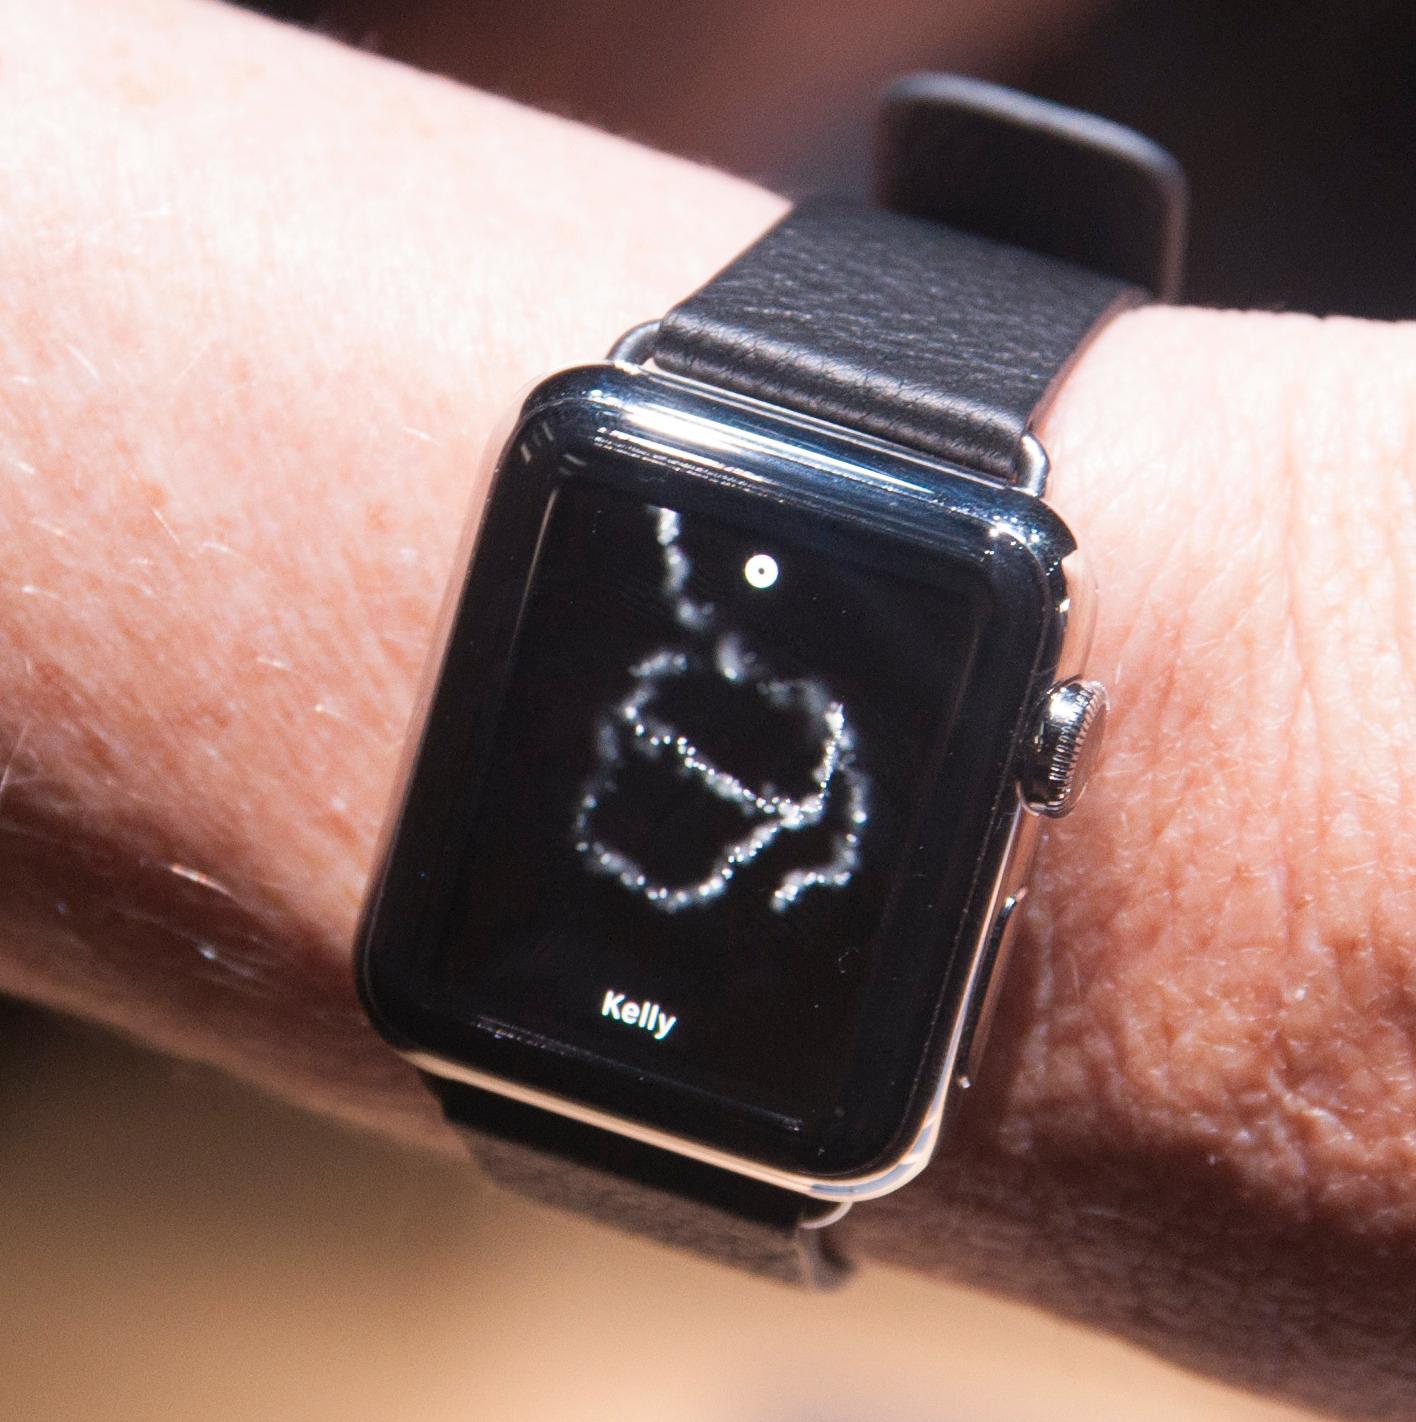 Du kan sende enkle bildemeldinger med Apple Watch. Her forsøkte vår hjelper å tegne en kaffekopp.Foto: Finn Jarle Kvalheim, Amobil.no